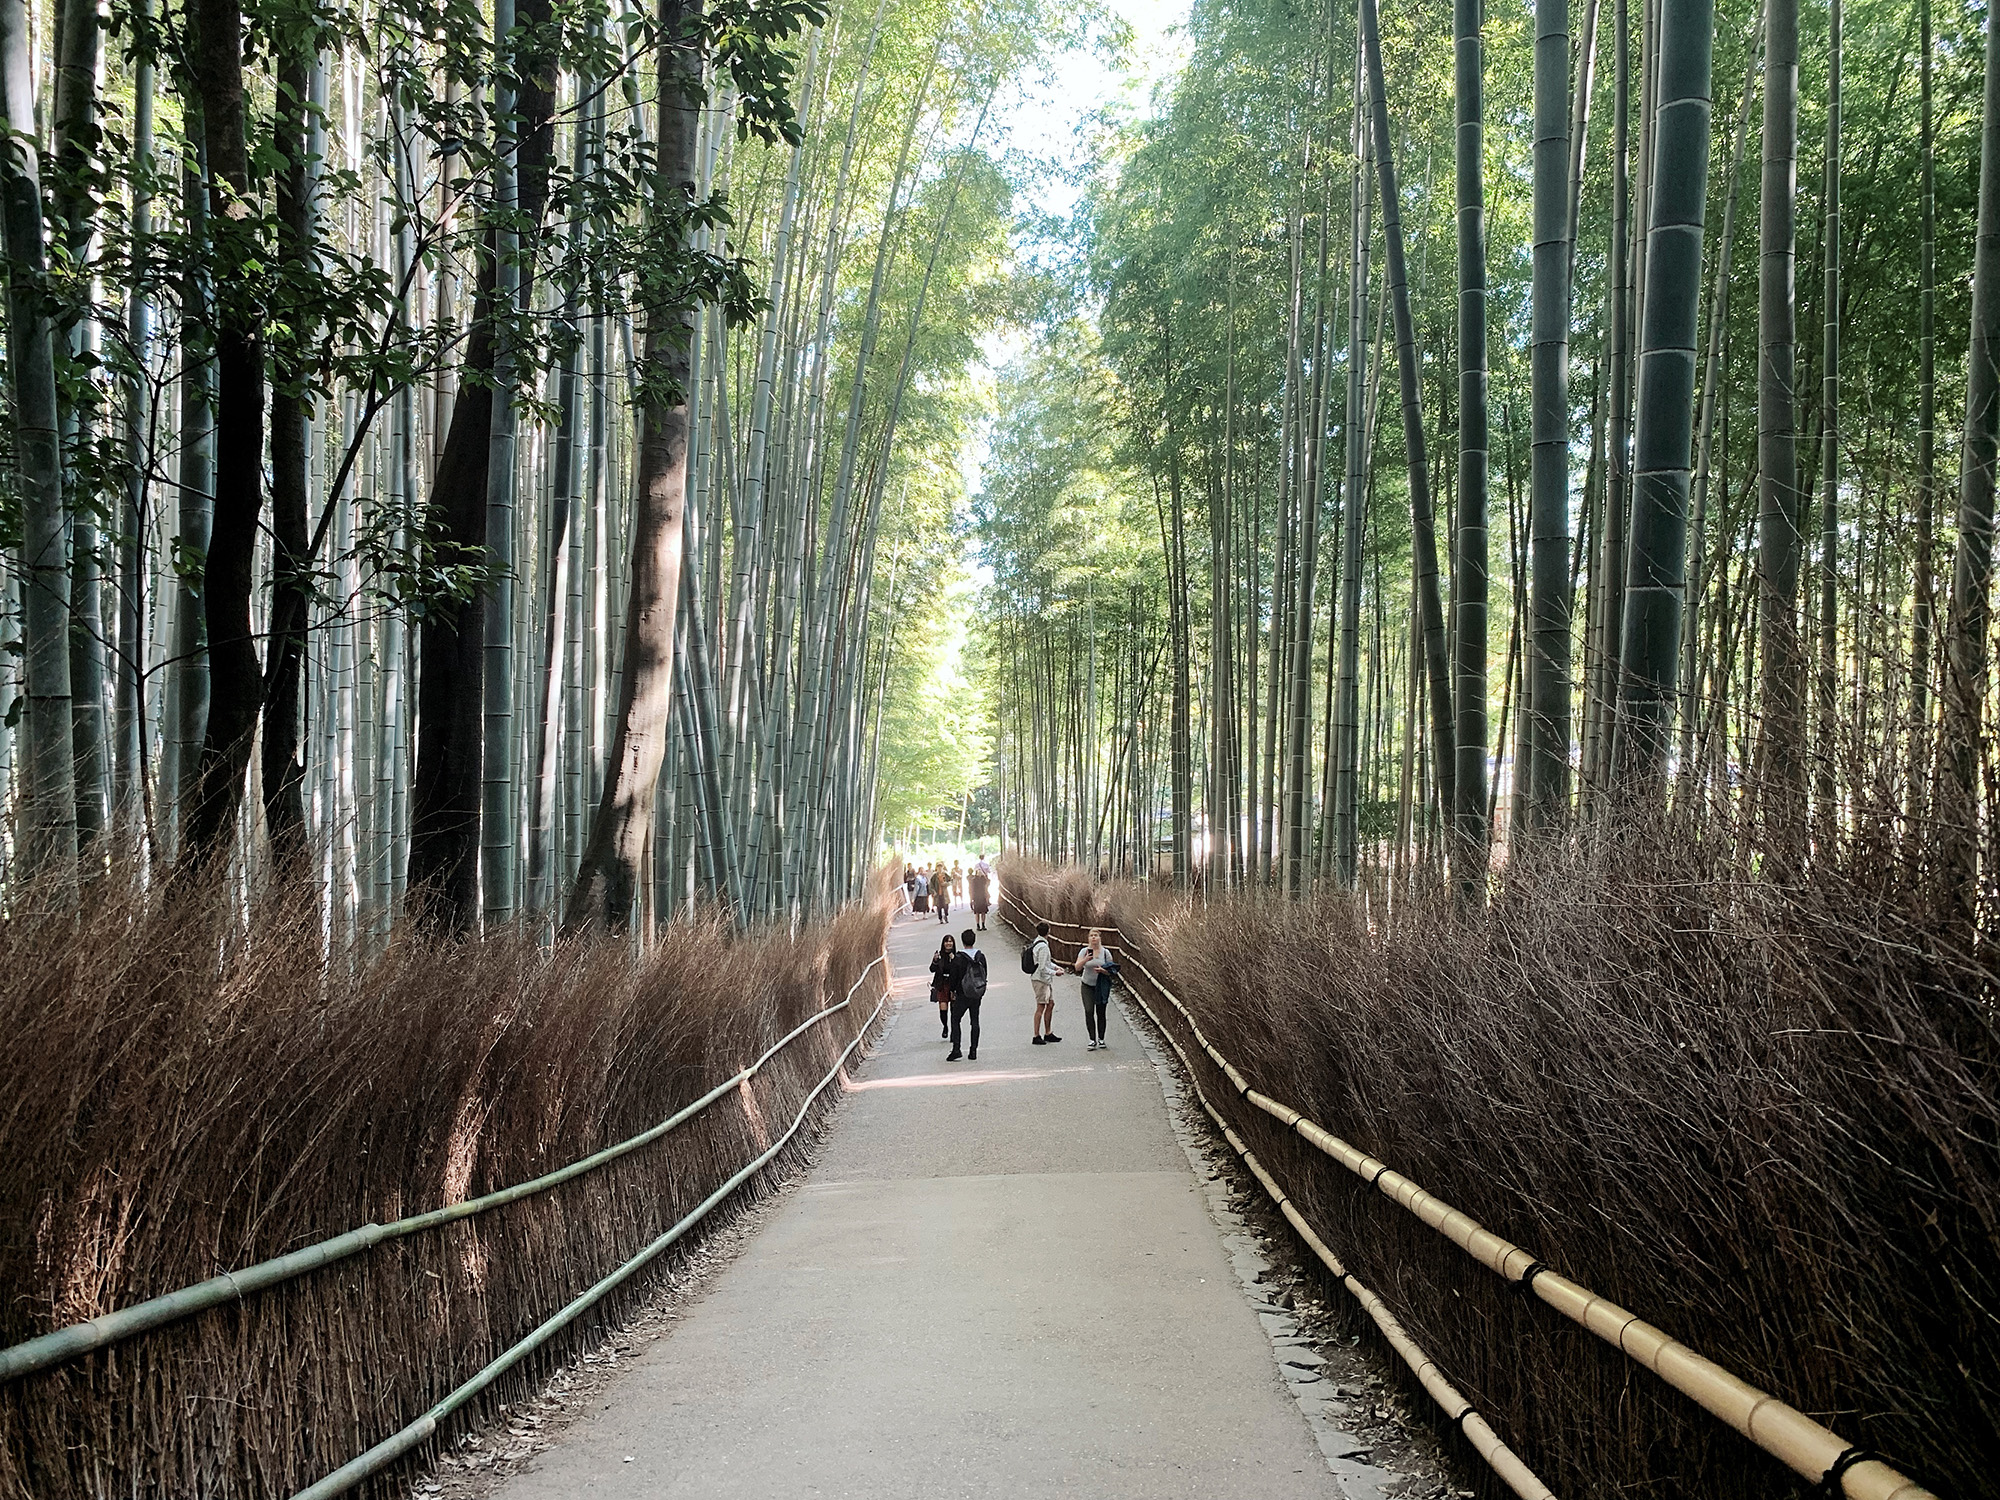 Kyoto Guide - Arashiyama Bamboo Grove